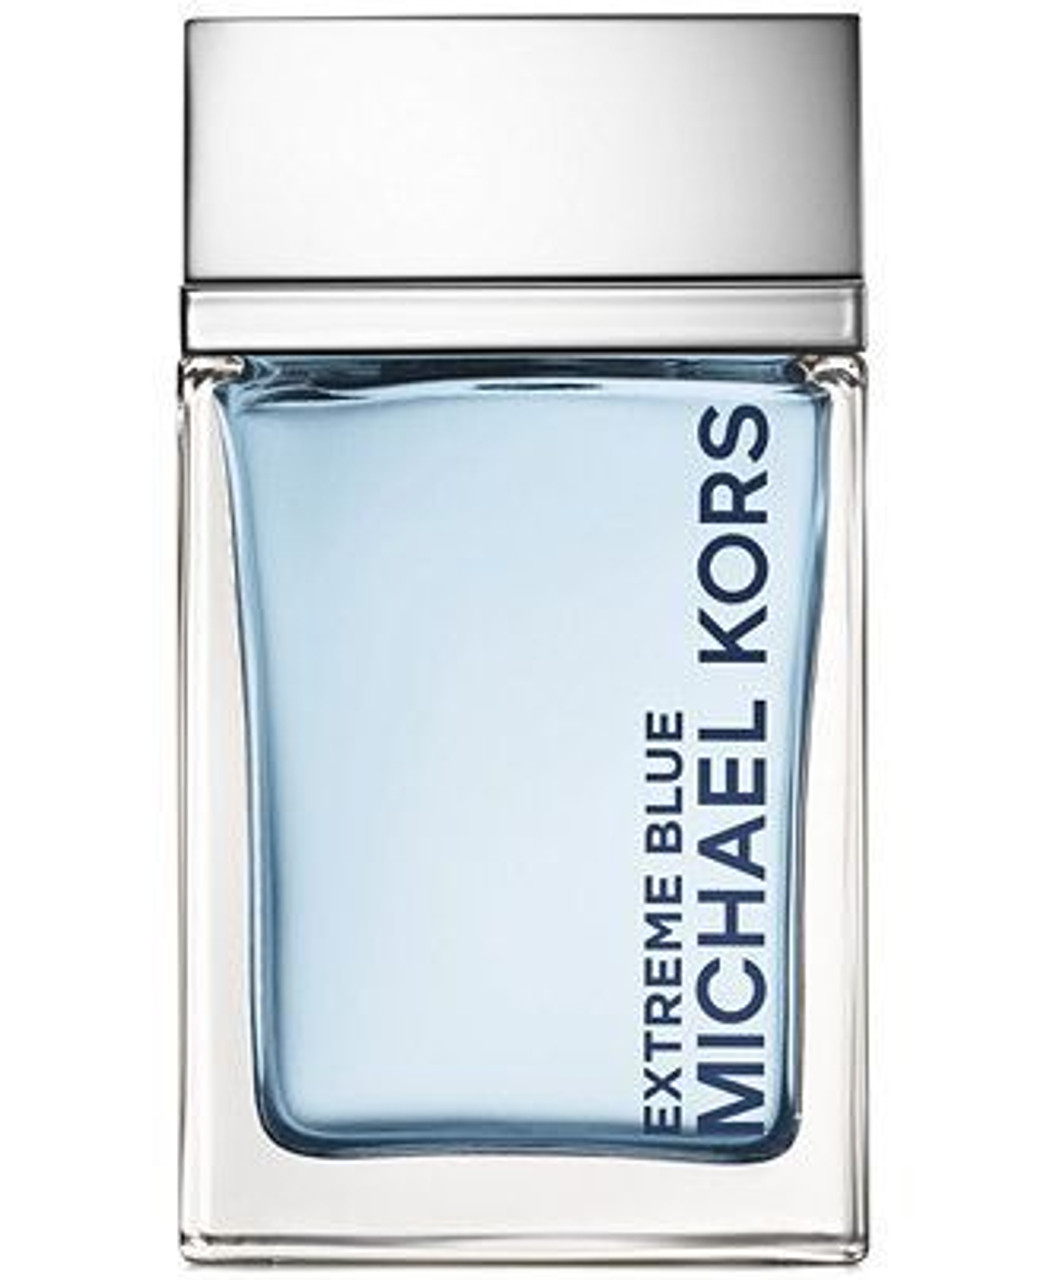 1 x Michael Kors Extreme Blue Men's Eau de Toilette size 1.4 oz / 40  ml in box